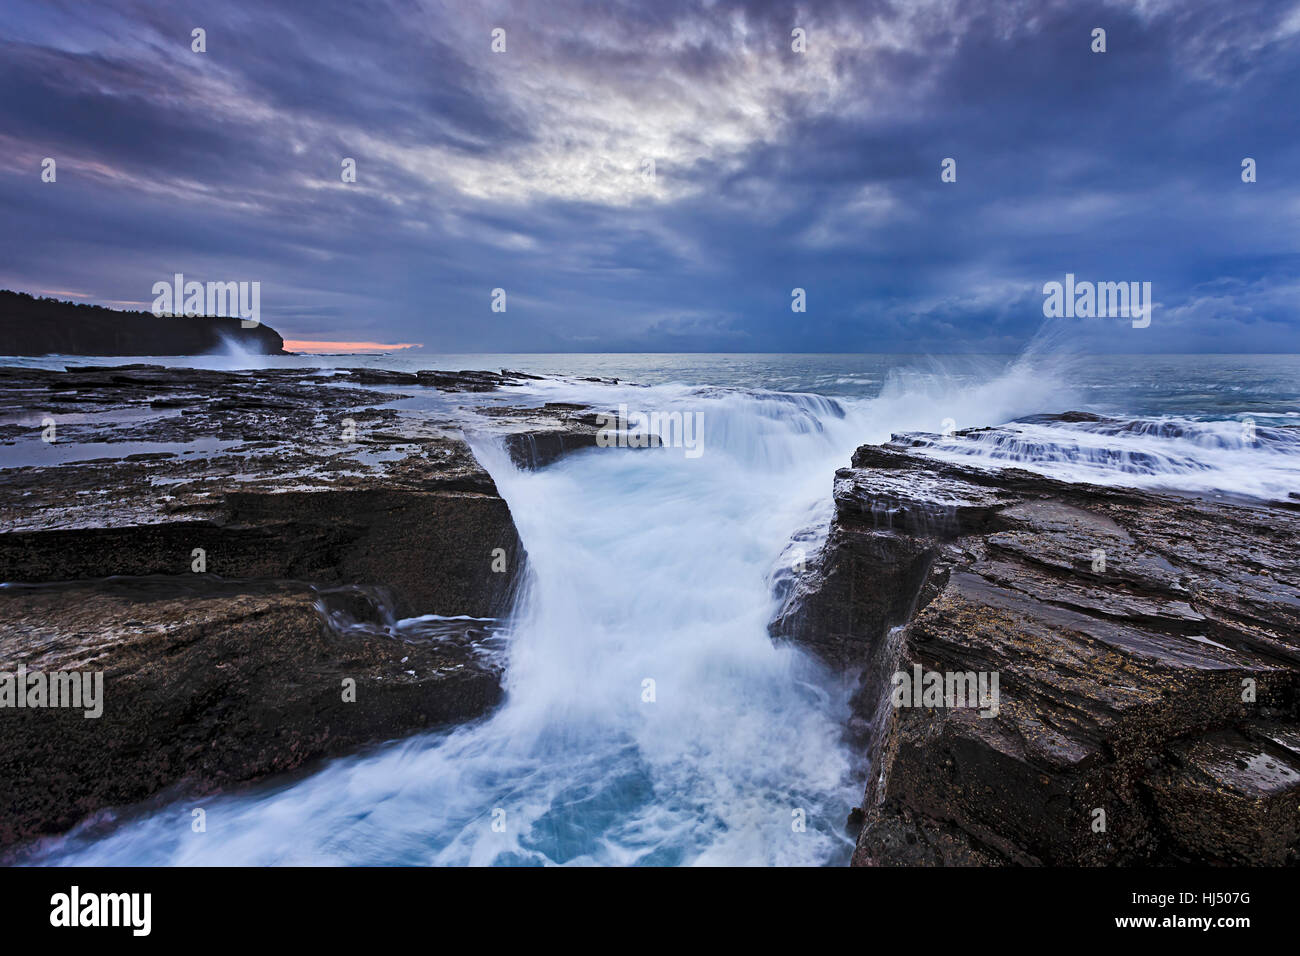 Costa frastagliata di Australia Sydney spiagge settentrionali a stormy sunrise quando forti onde hit incrinatura nella costa di rocce di arenaria Foto Stock